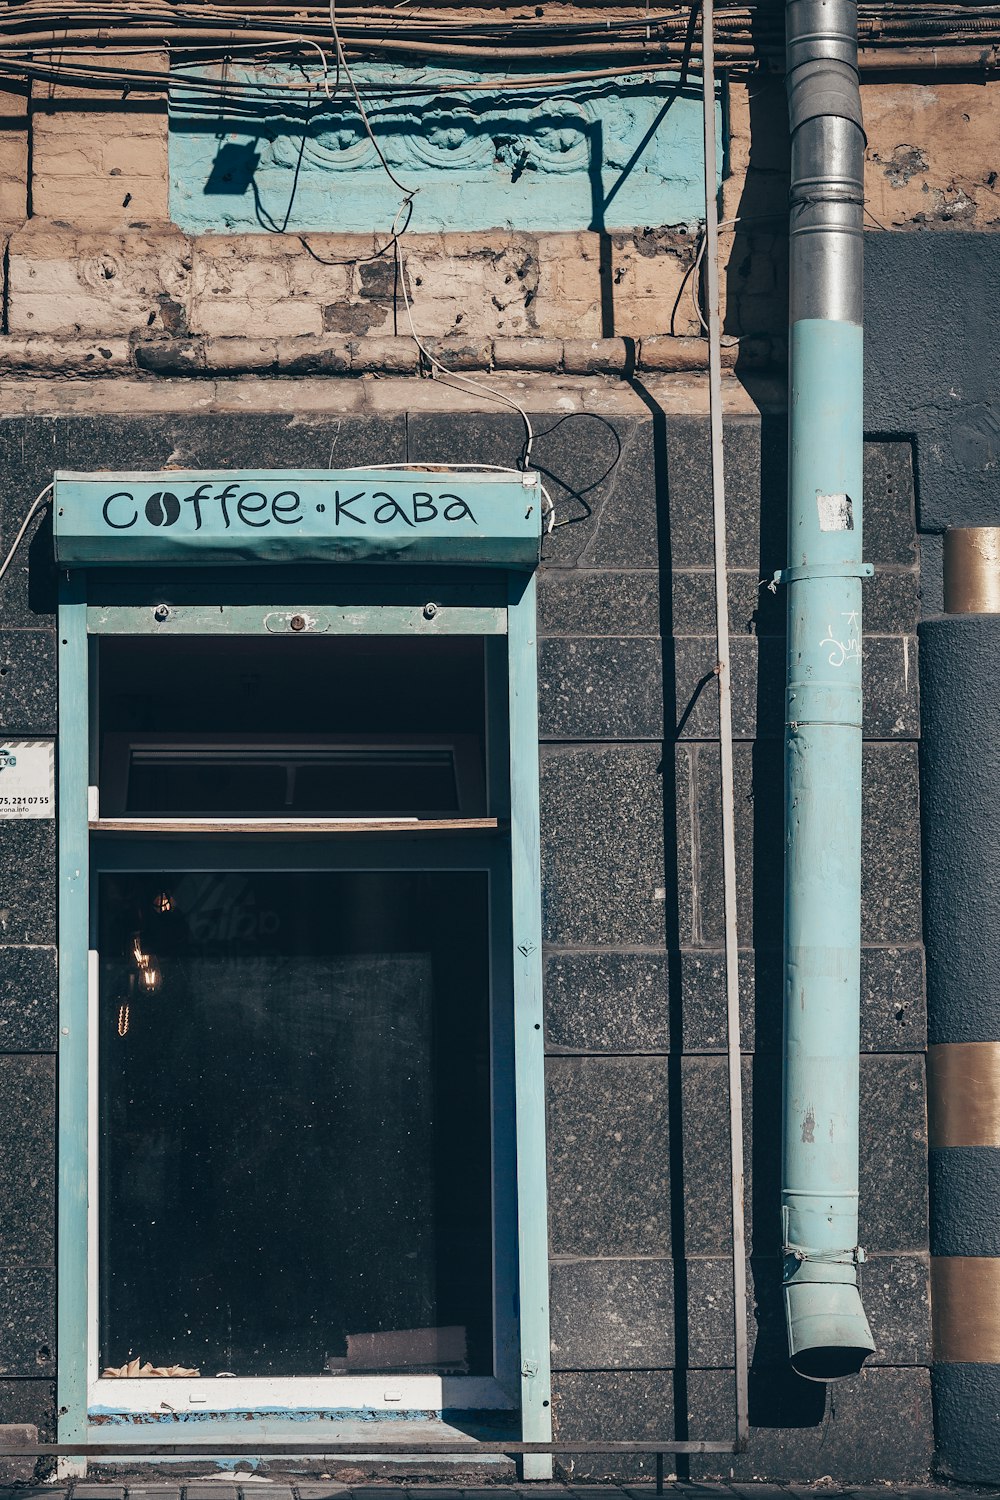 Coffee Kaba signage